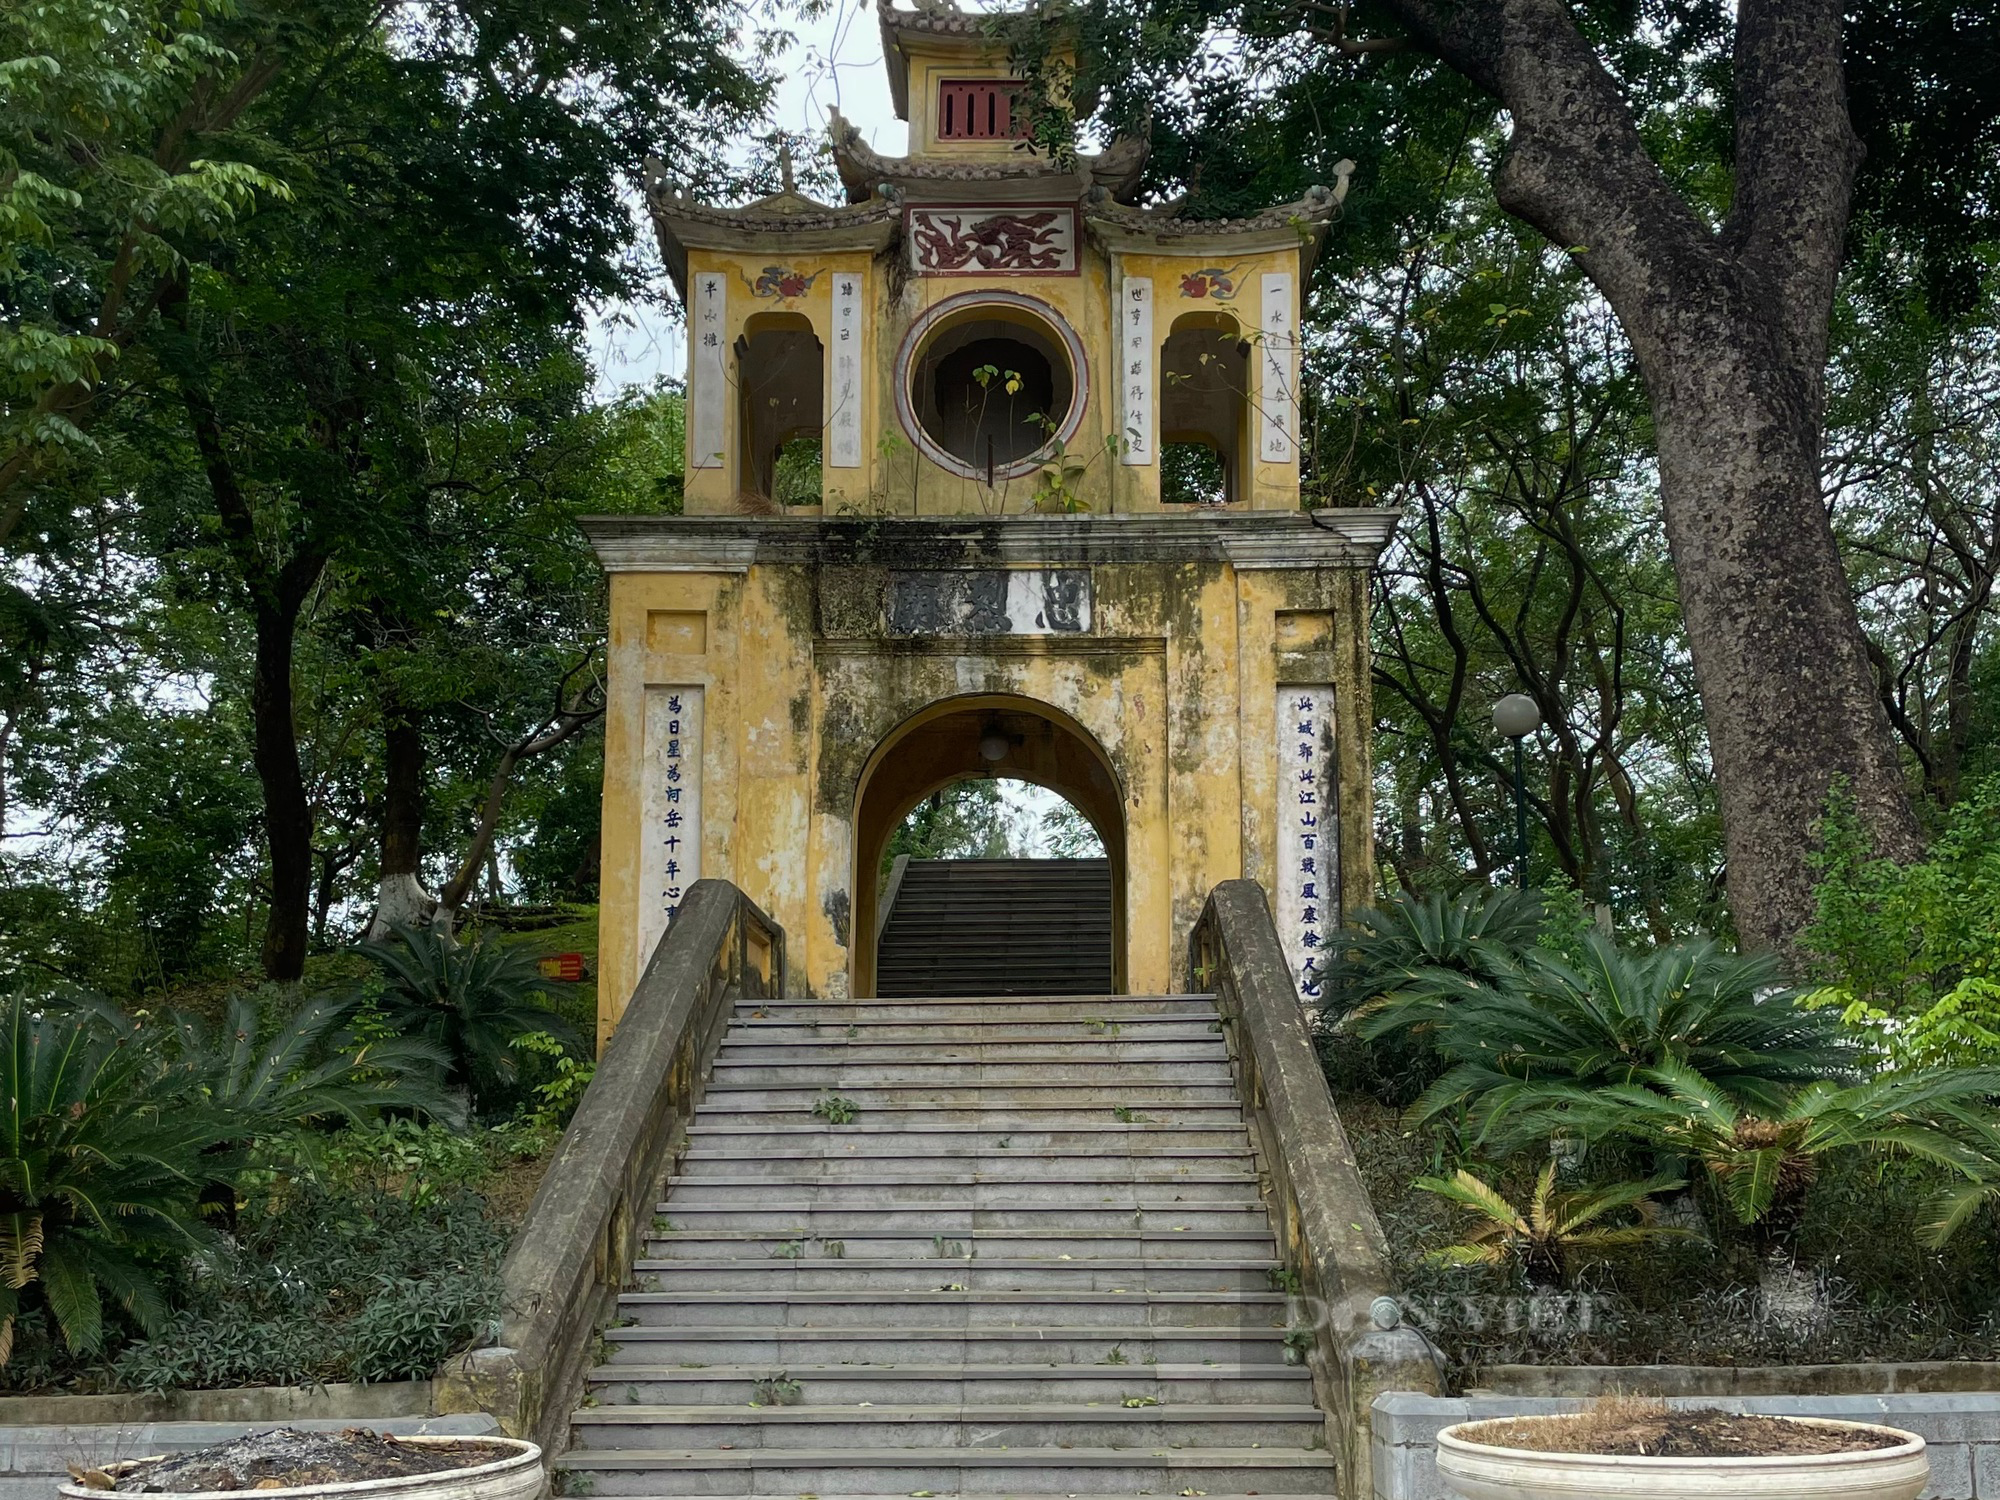 Tiết lộ bất ngờ về bức tượng vua Quang Trung trong công viên Đống Đa Hà Nội - Ảnh 11.